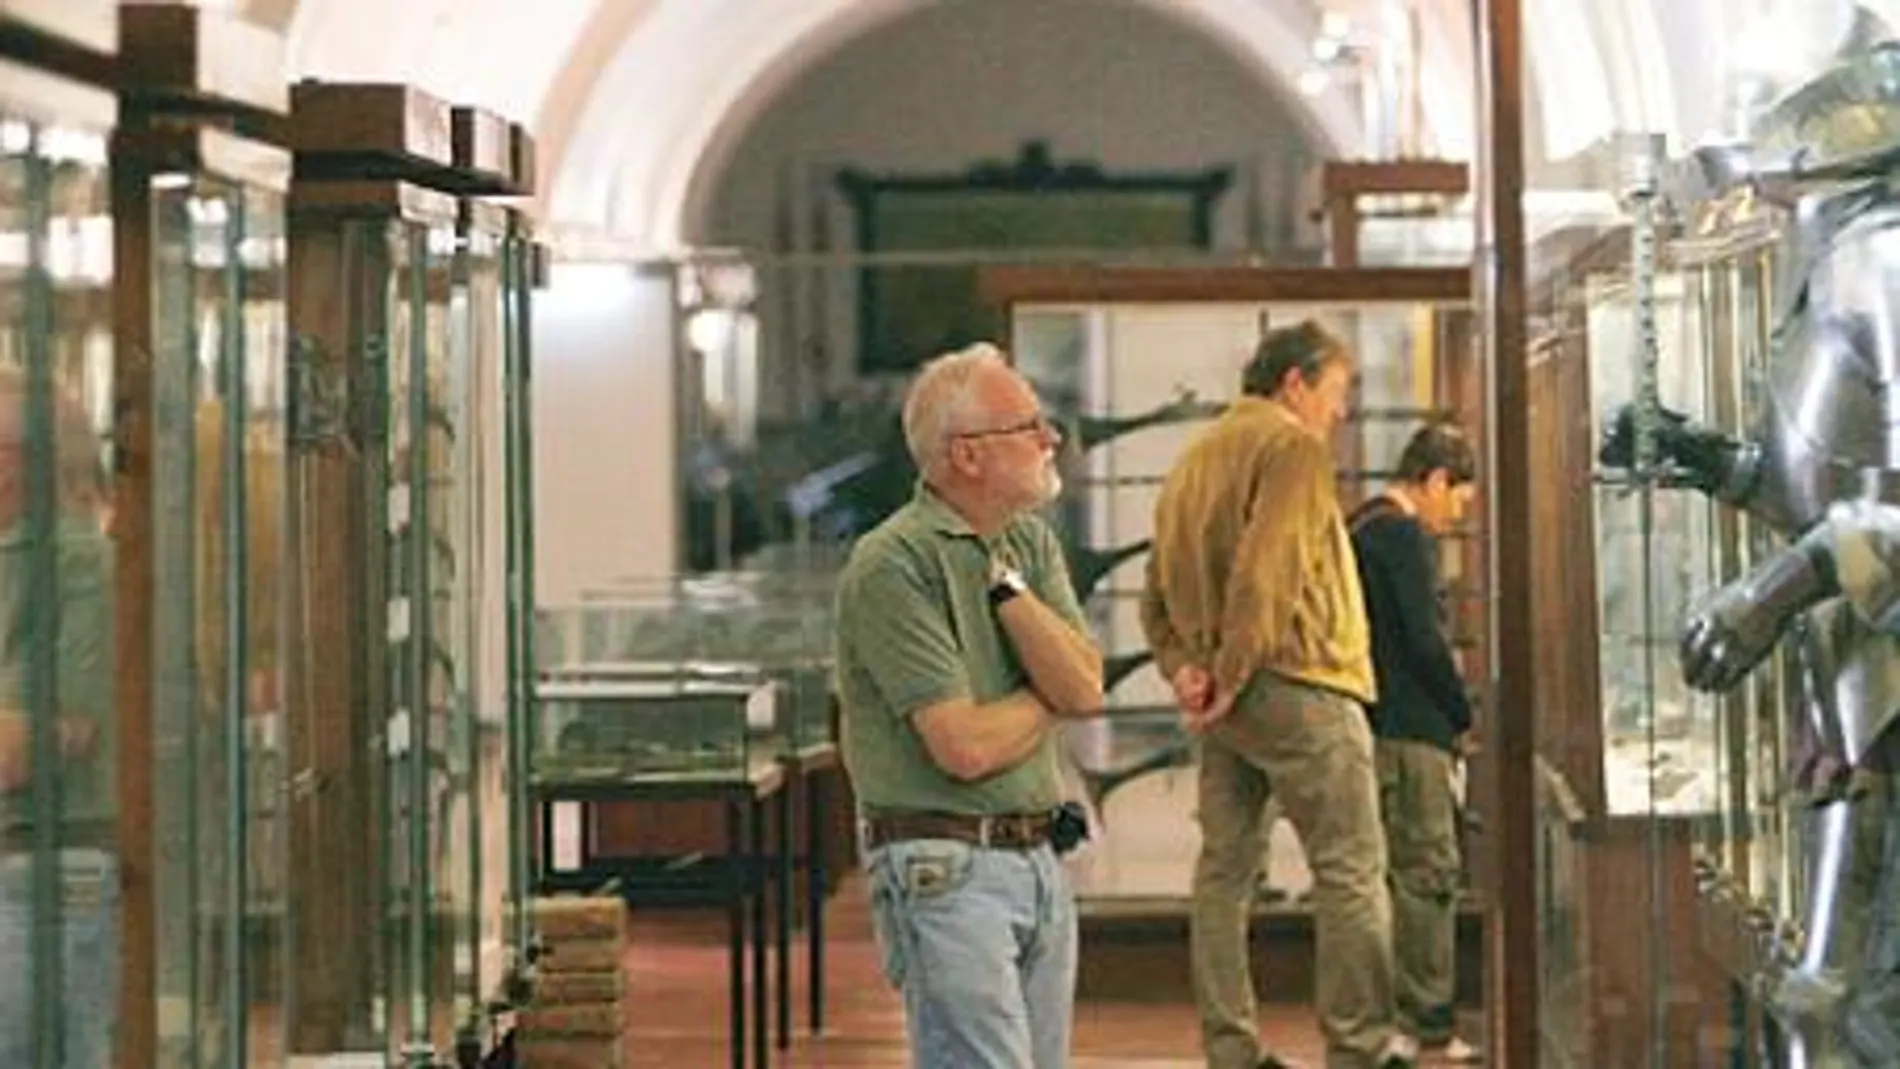 El Museo Militar cerrará sin concretar el destino de sus fondos